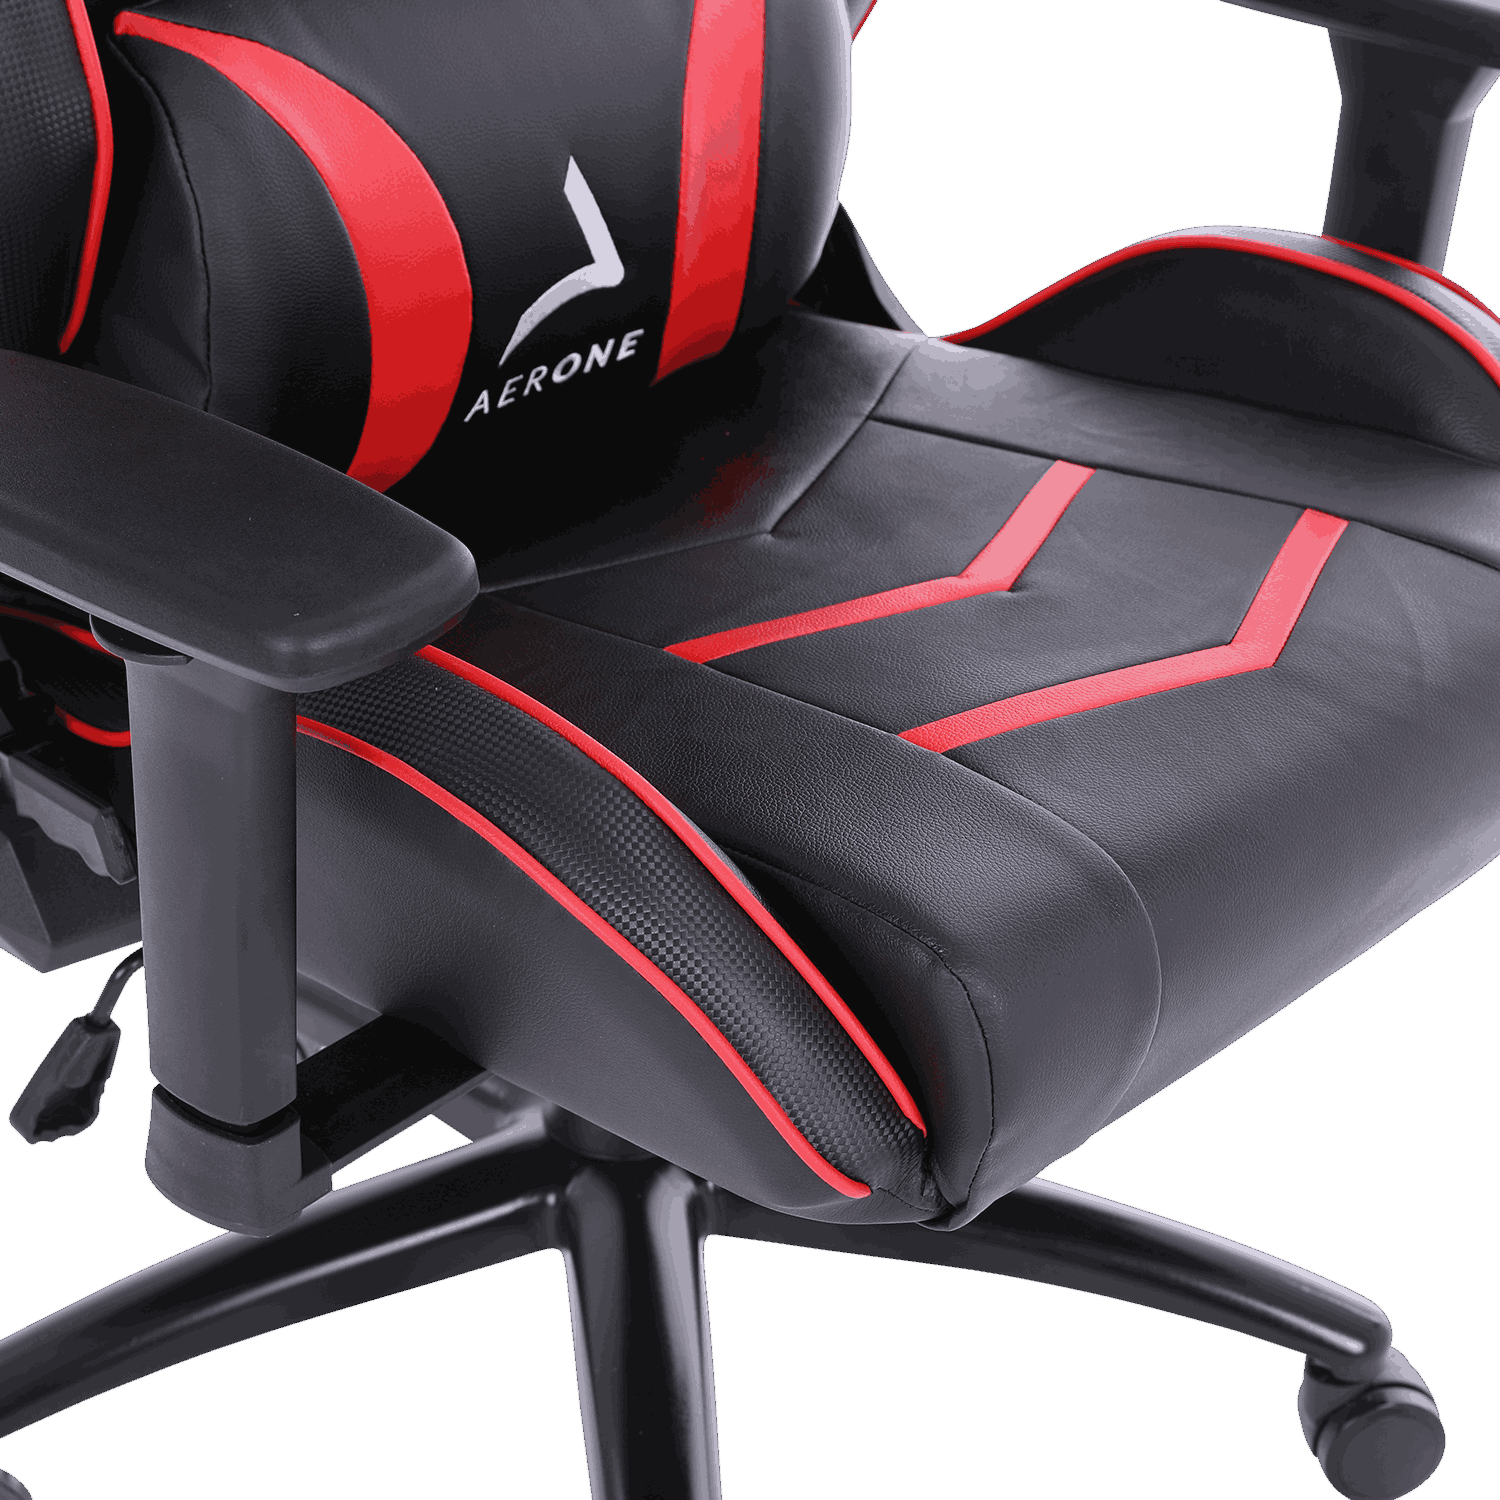 Cadeira para jogos Silver Series Scarlet Red (Pré-encomenda)